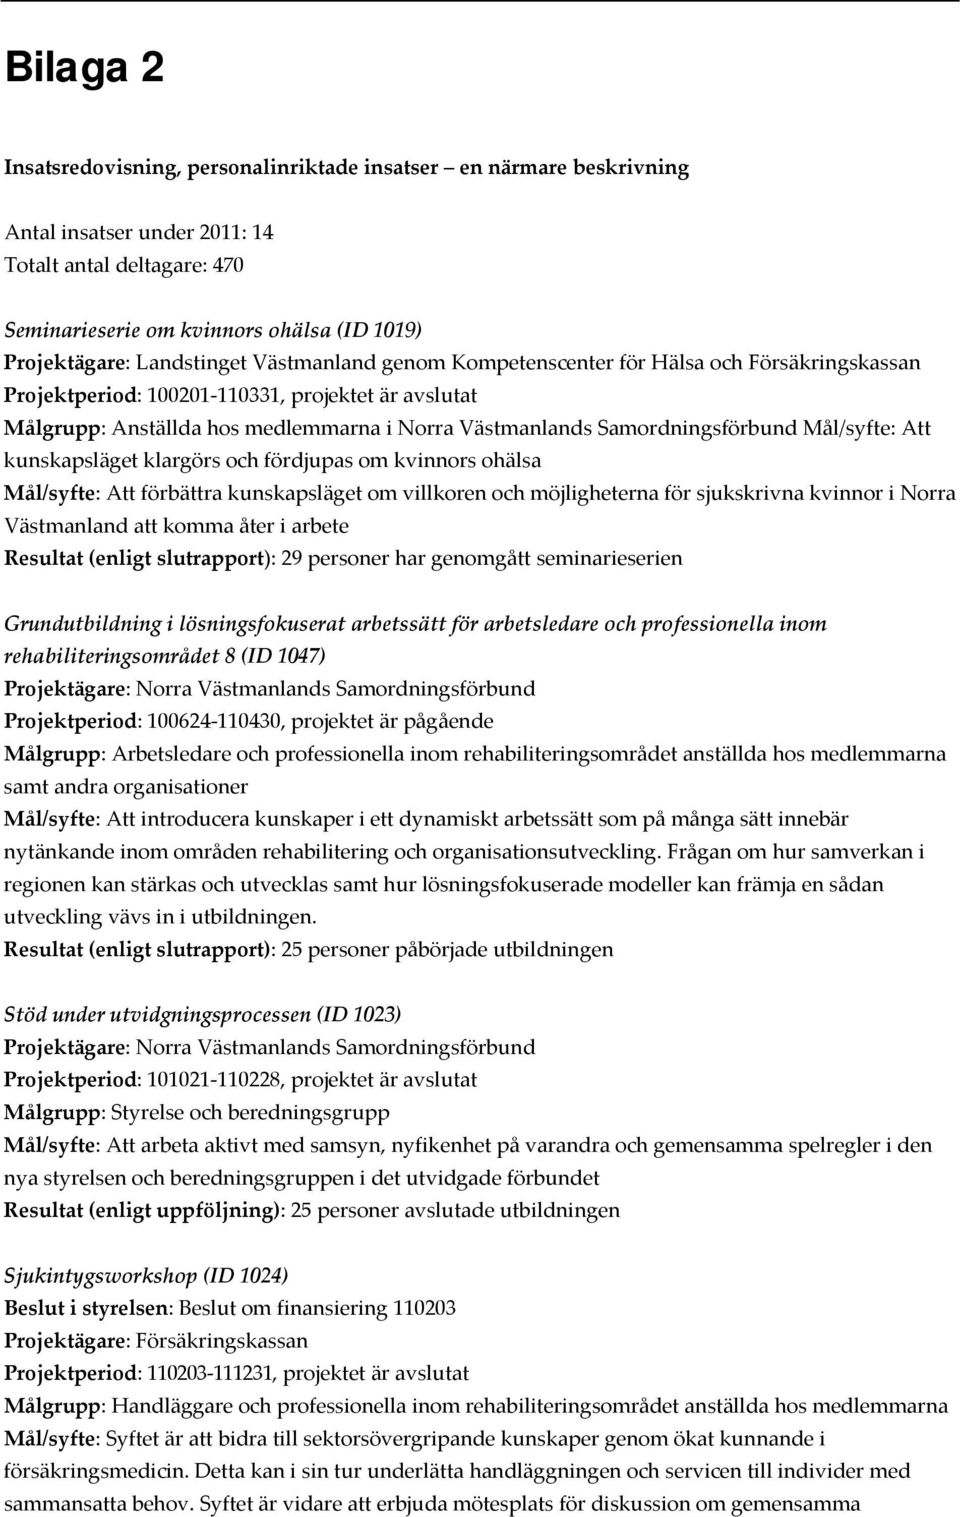 Samordningsförbund Mål/syfte: Att kunskapsläget klargörs och fördjupas om kvinnors ohälsa Mål/syfte: Att förbättra kunskapsläget om villkoren och möjligheterna för sjukskrivna kvinnor i Norra